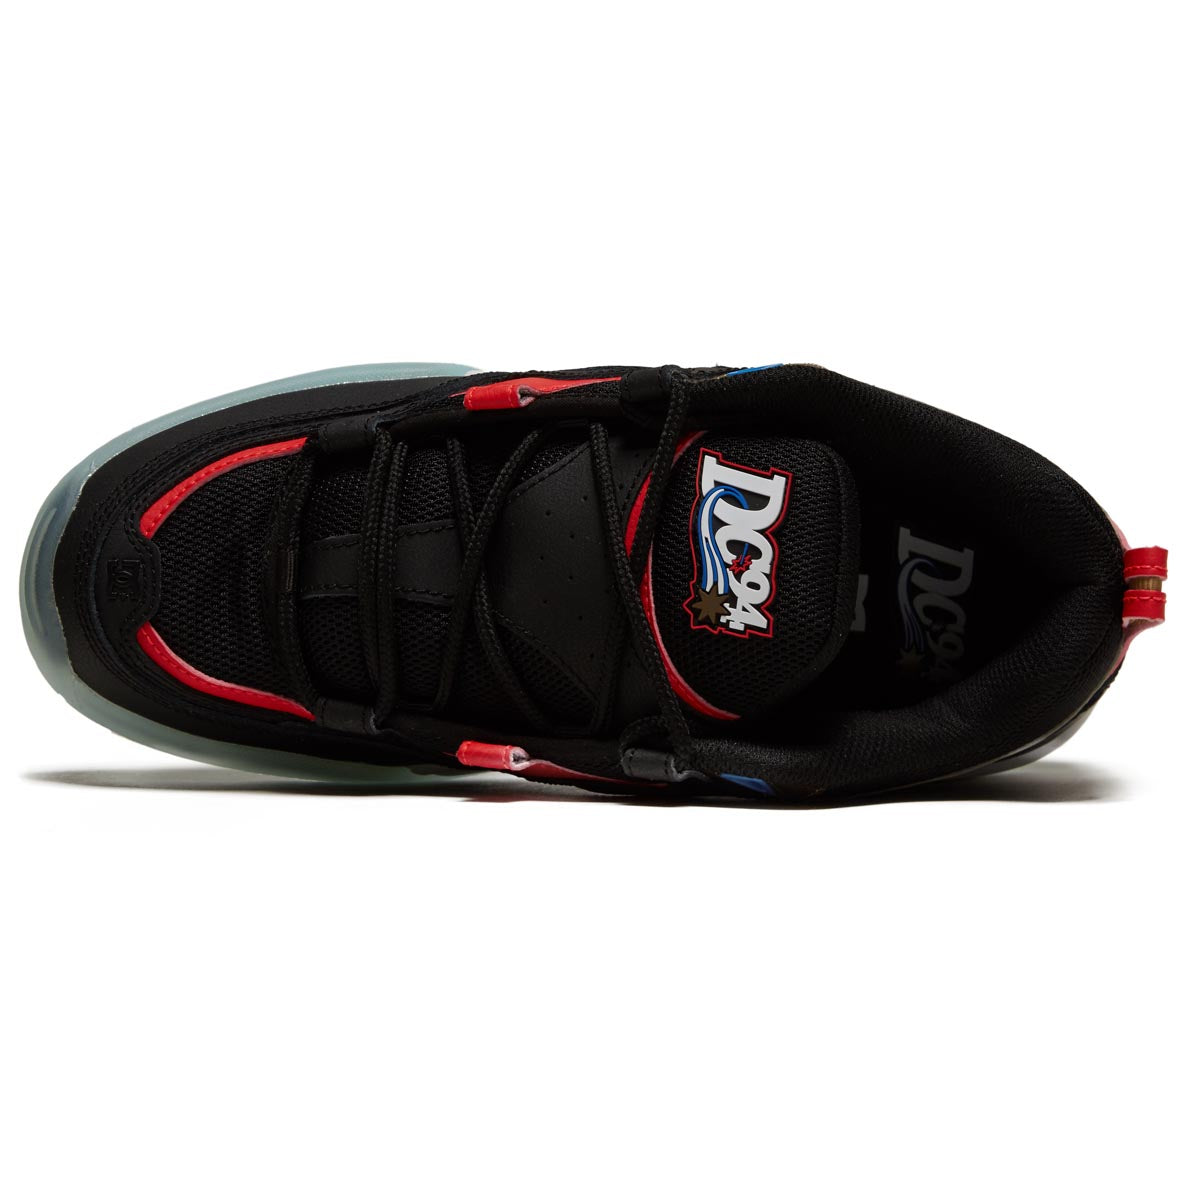 DC Truth OG Shoes - Black/Red/Blue image 3